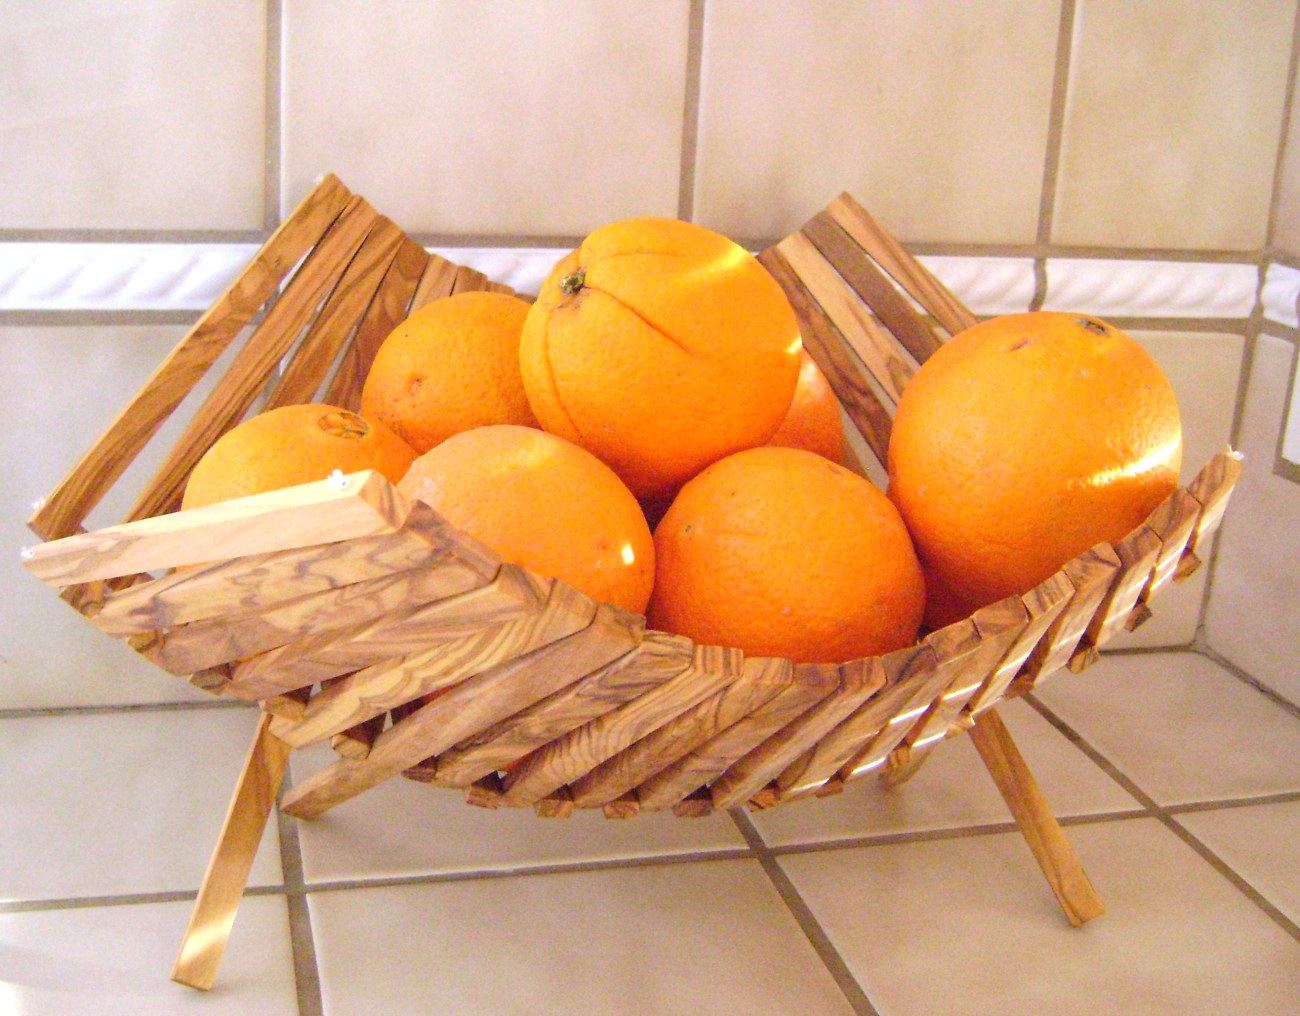 Big fruit basket made of olive wood